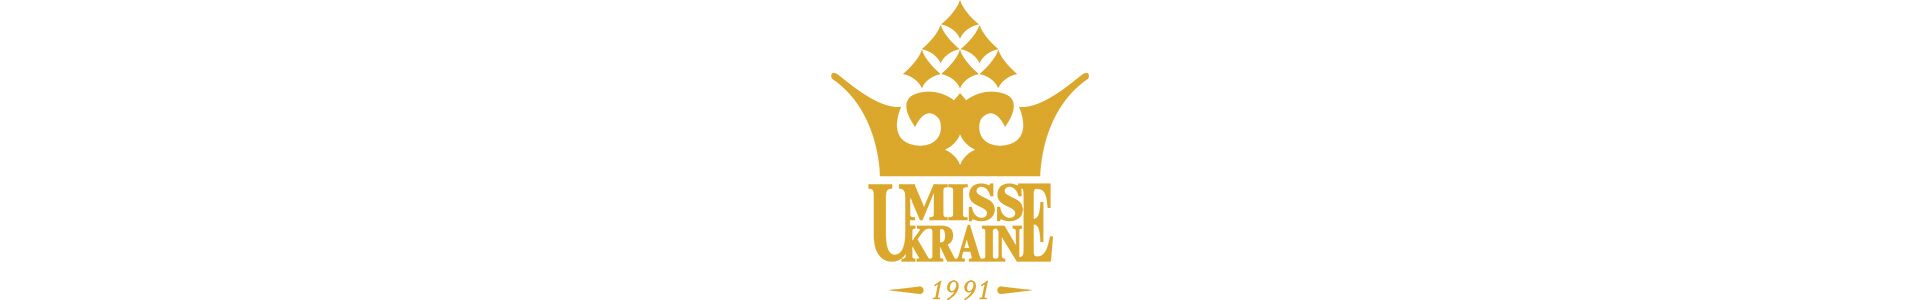 Національний комітет "Міс Україна" та фіналістки конкурсу відвідали лікарню Охматдит, щоб систематизувати бібліотеку.